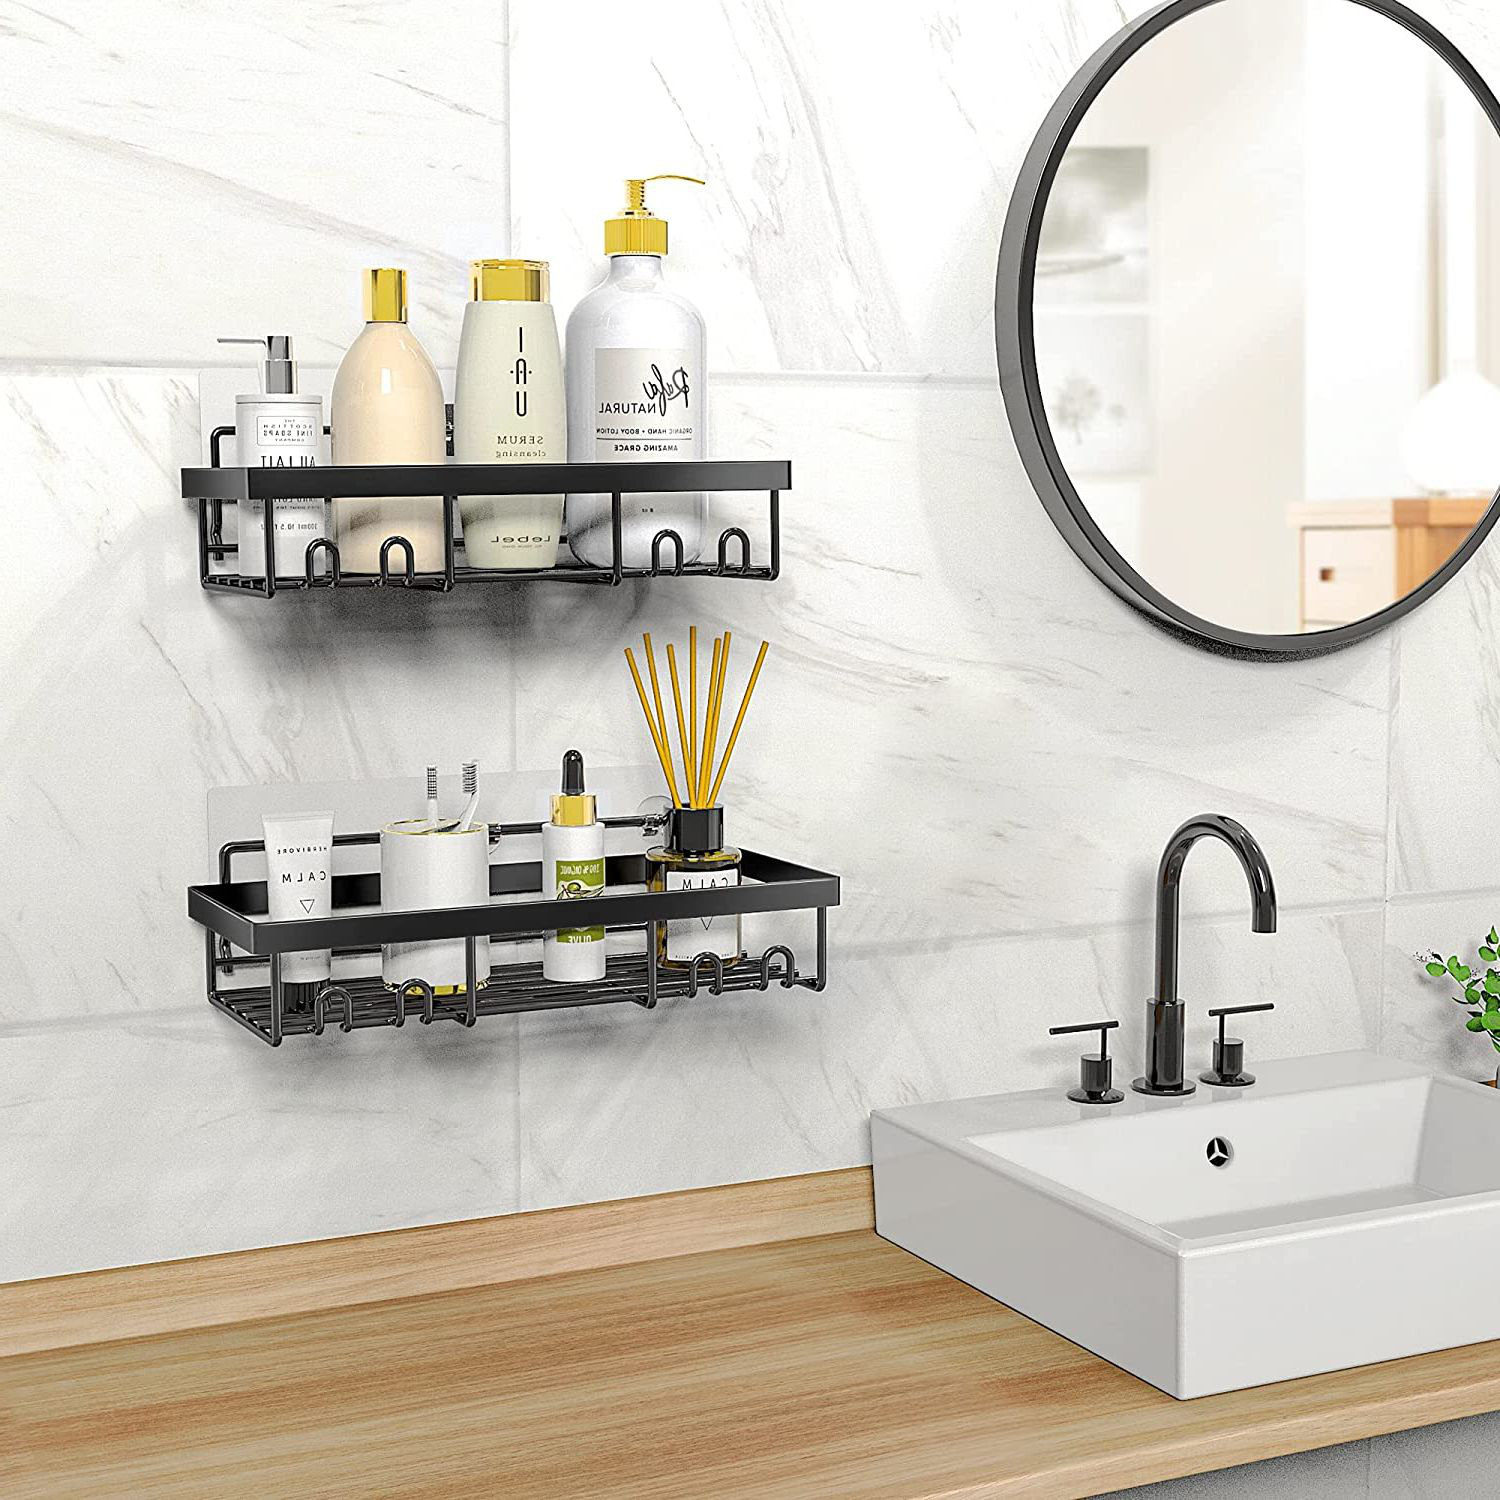 Lucine Holder for Kitchen Sink Adhesive Sponge Caddy Shower Shelf with Hooks Stick Rebrilliant